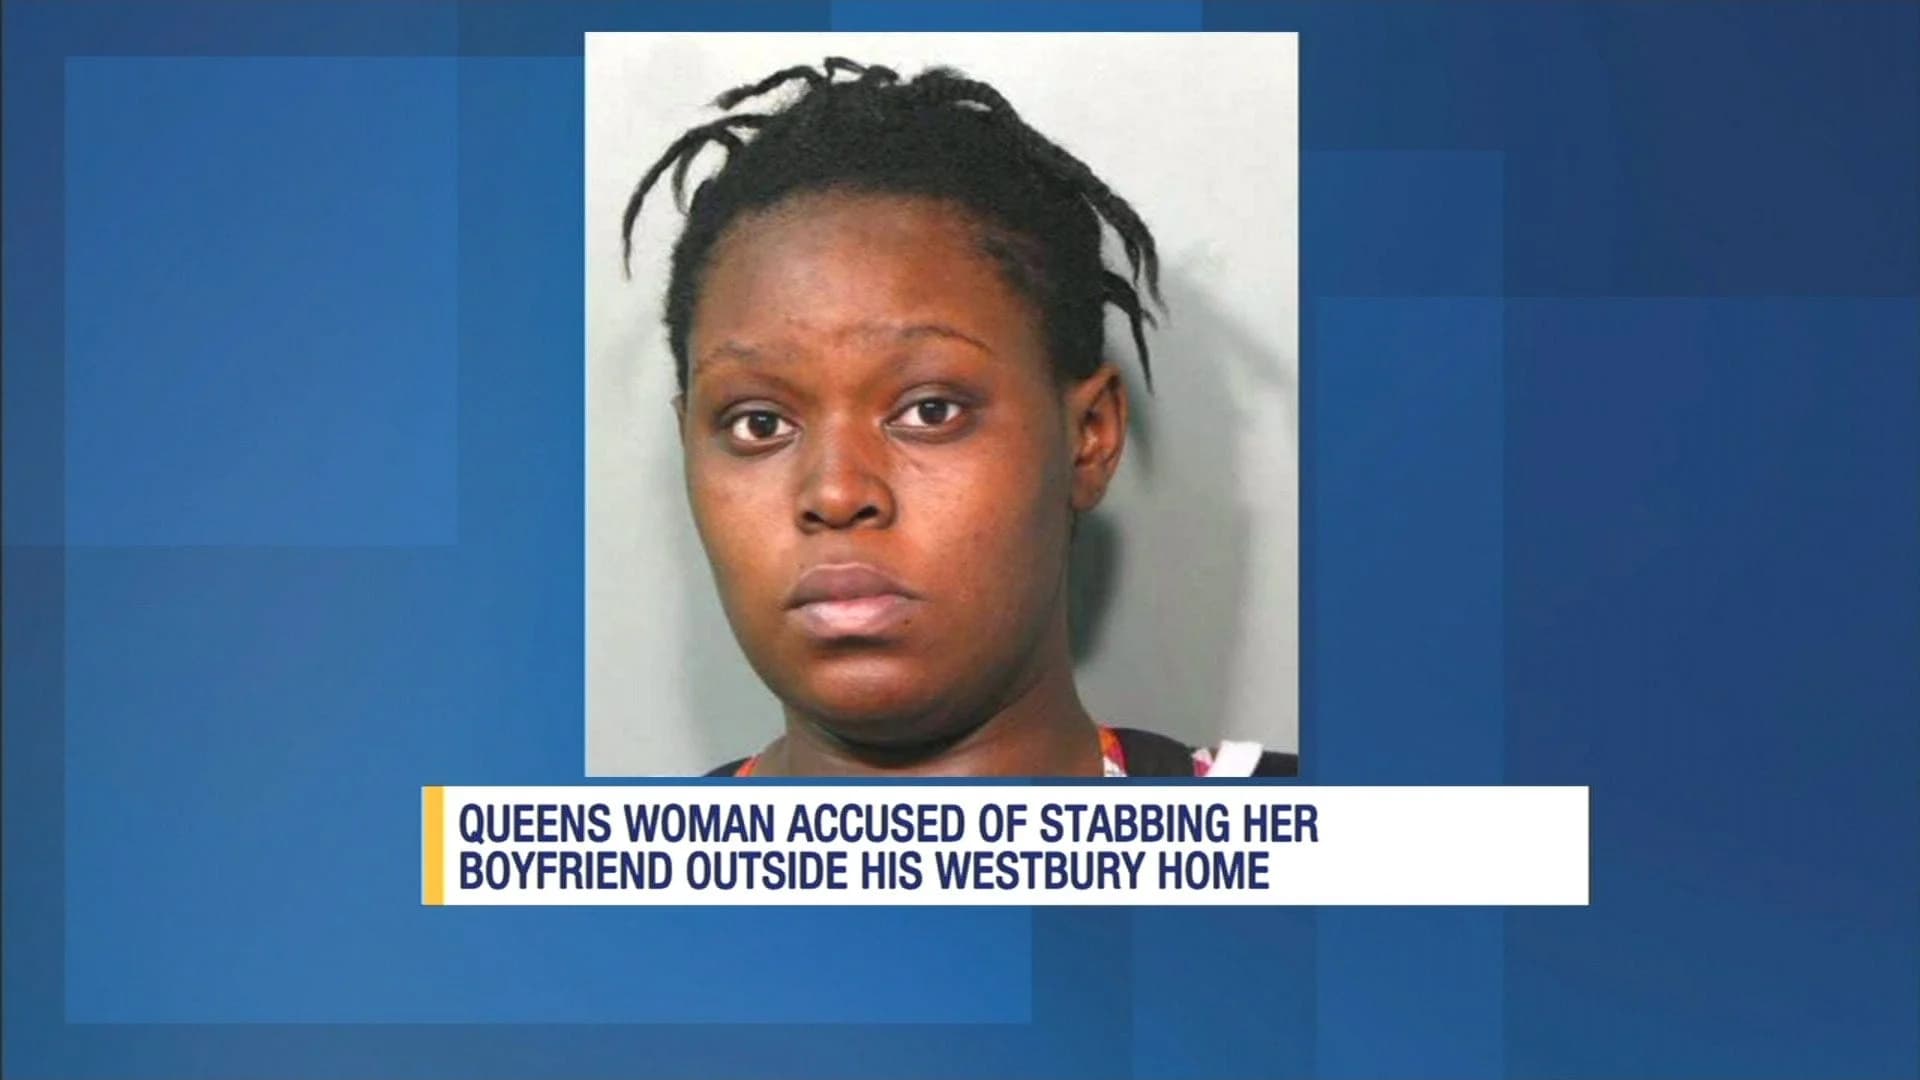 Woman accused of stabbing boyfriend in Westbury